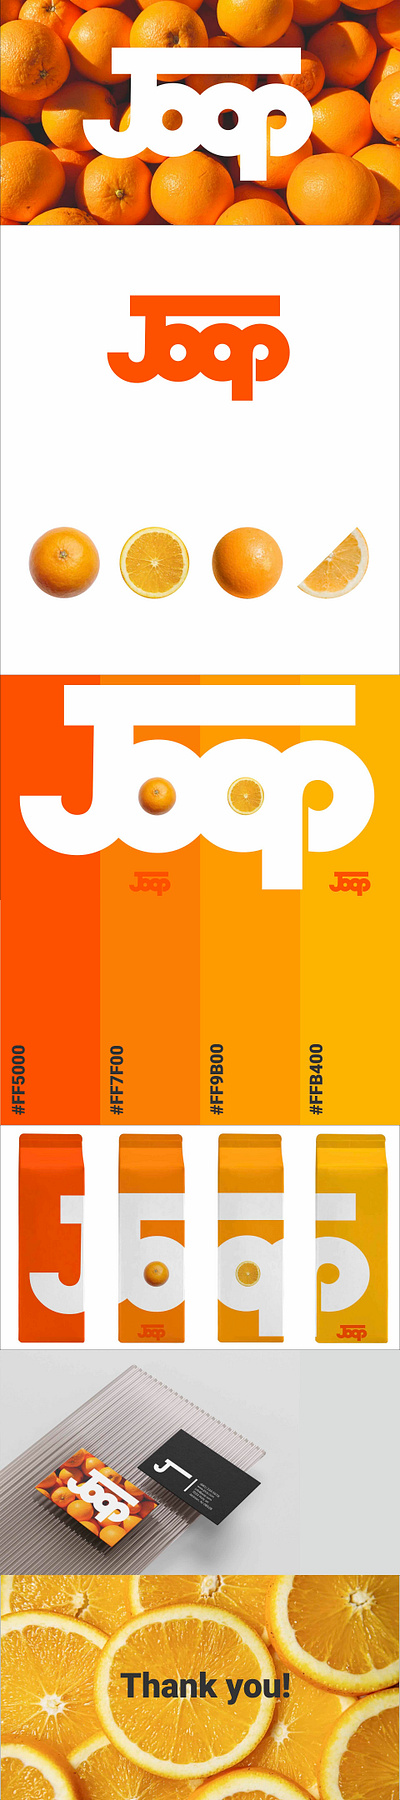 Joop juices branding design graphic design logo vector